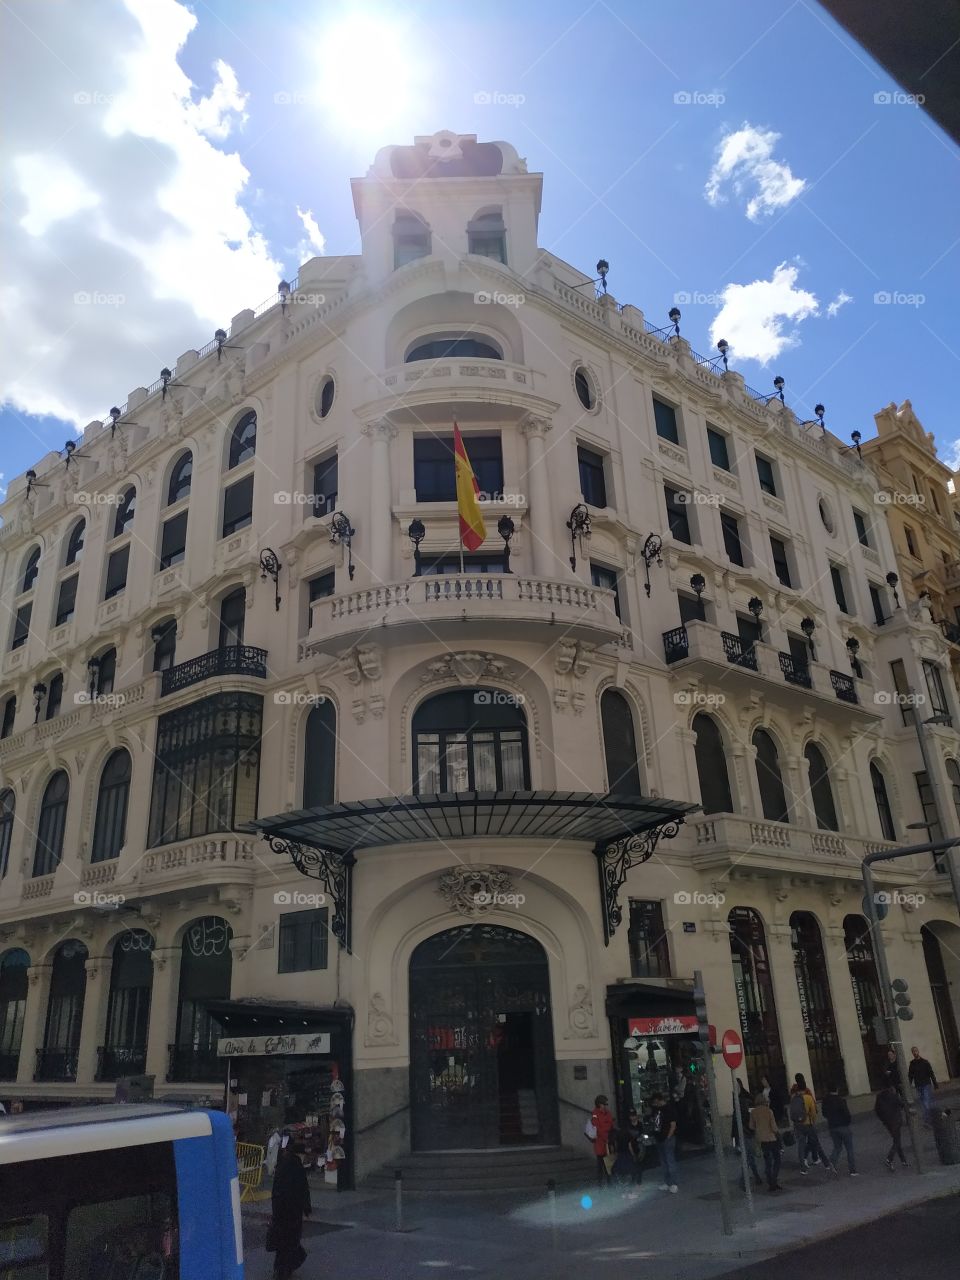 Edificio con vista al cielo

Madrid, España. Una ciudad donde se puede ver con facilidad los cielos azules. Arquitectura donde son mas interesantes con un cielo de fondo.